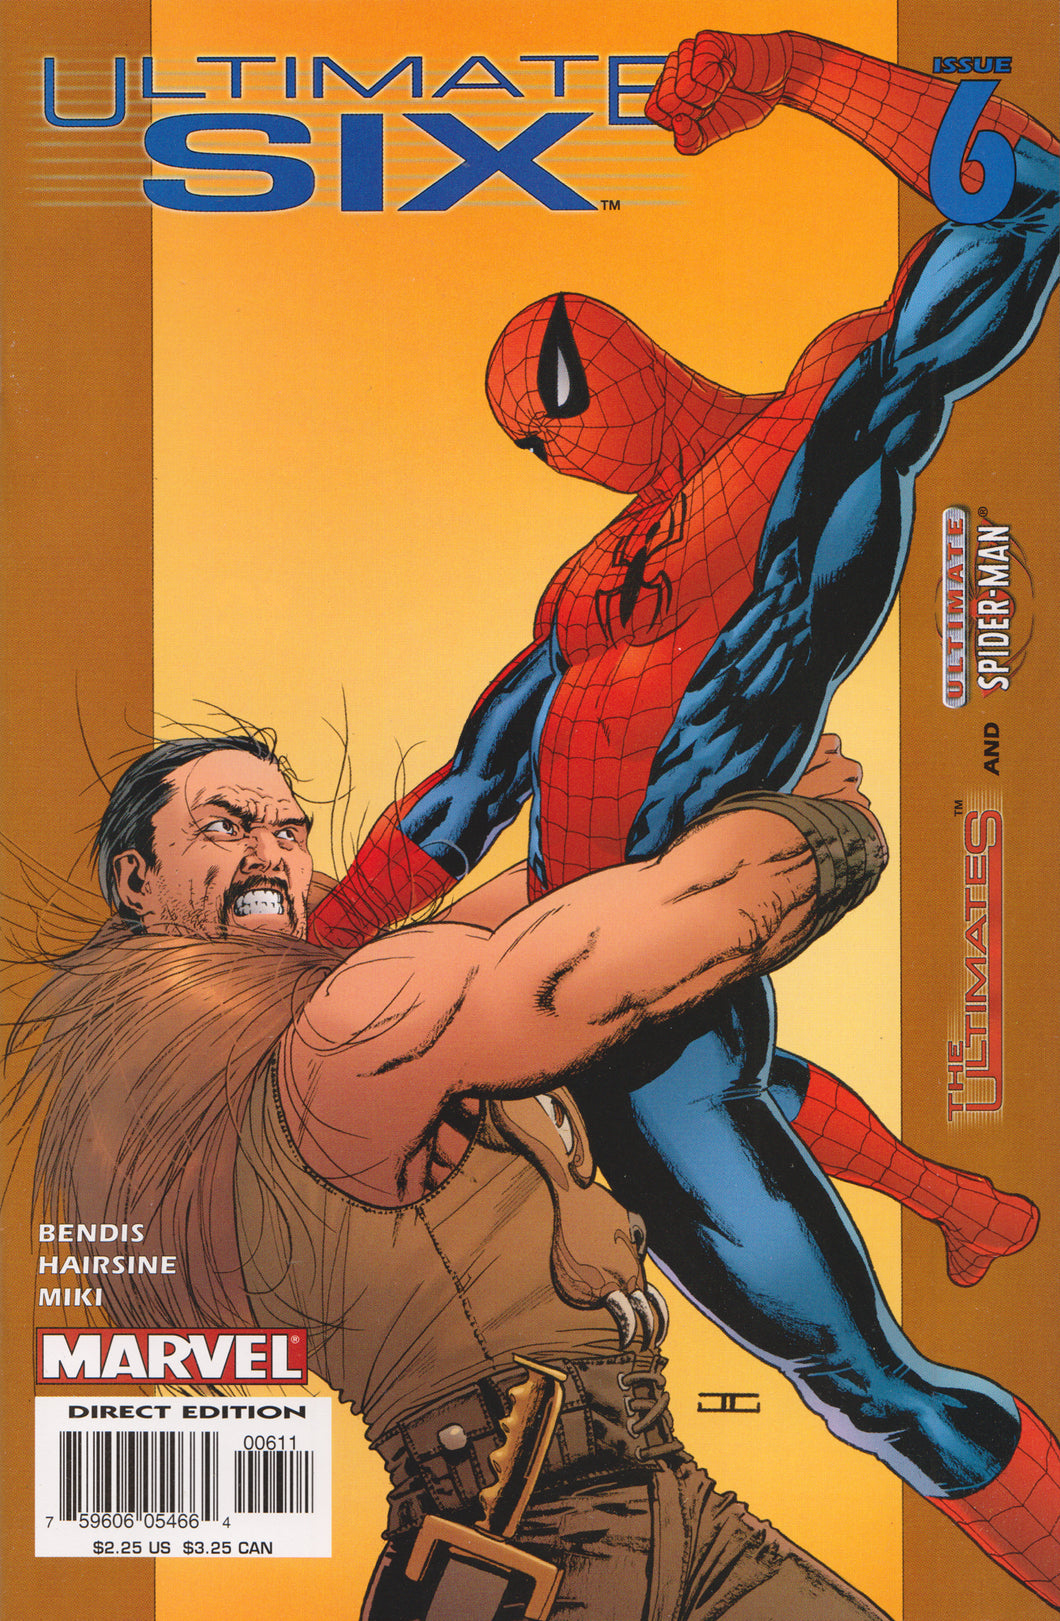 ULTIMATE SIX #6 COMIC BOOK (BRIAN BENDIS) ~ Marvel Comics